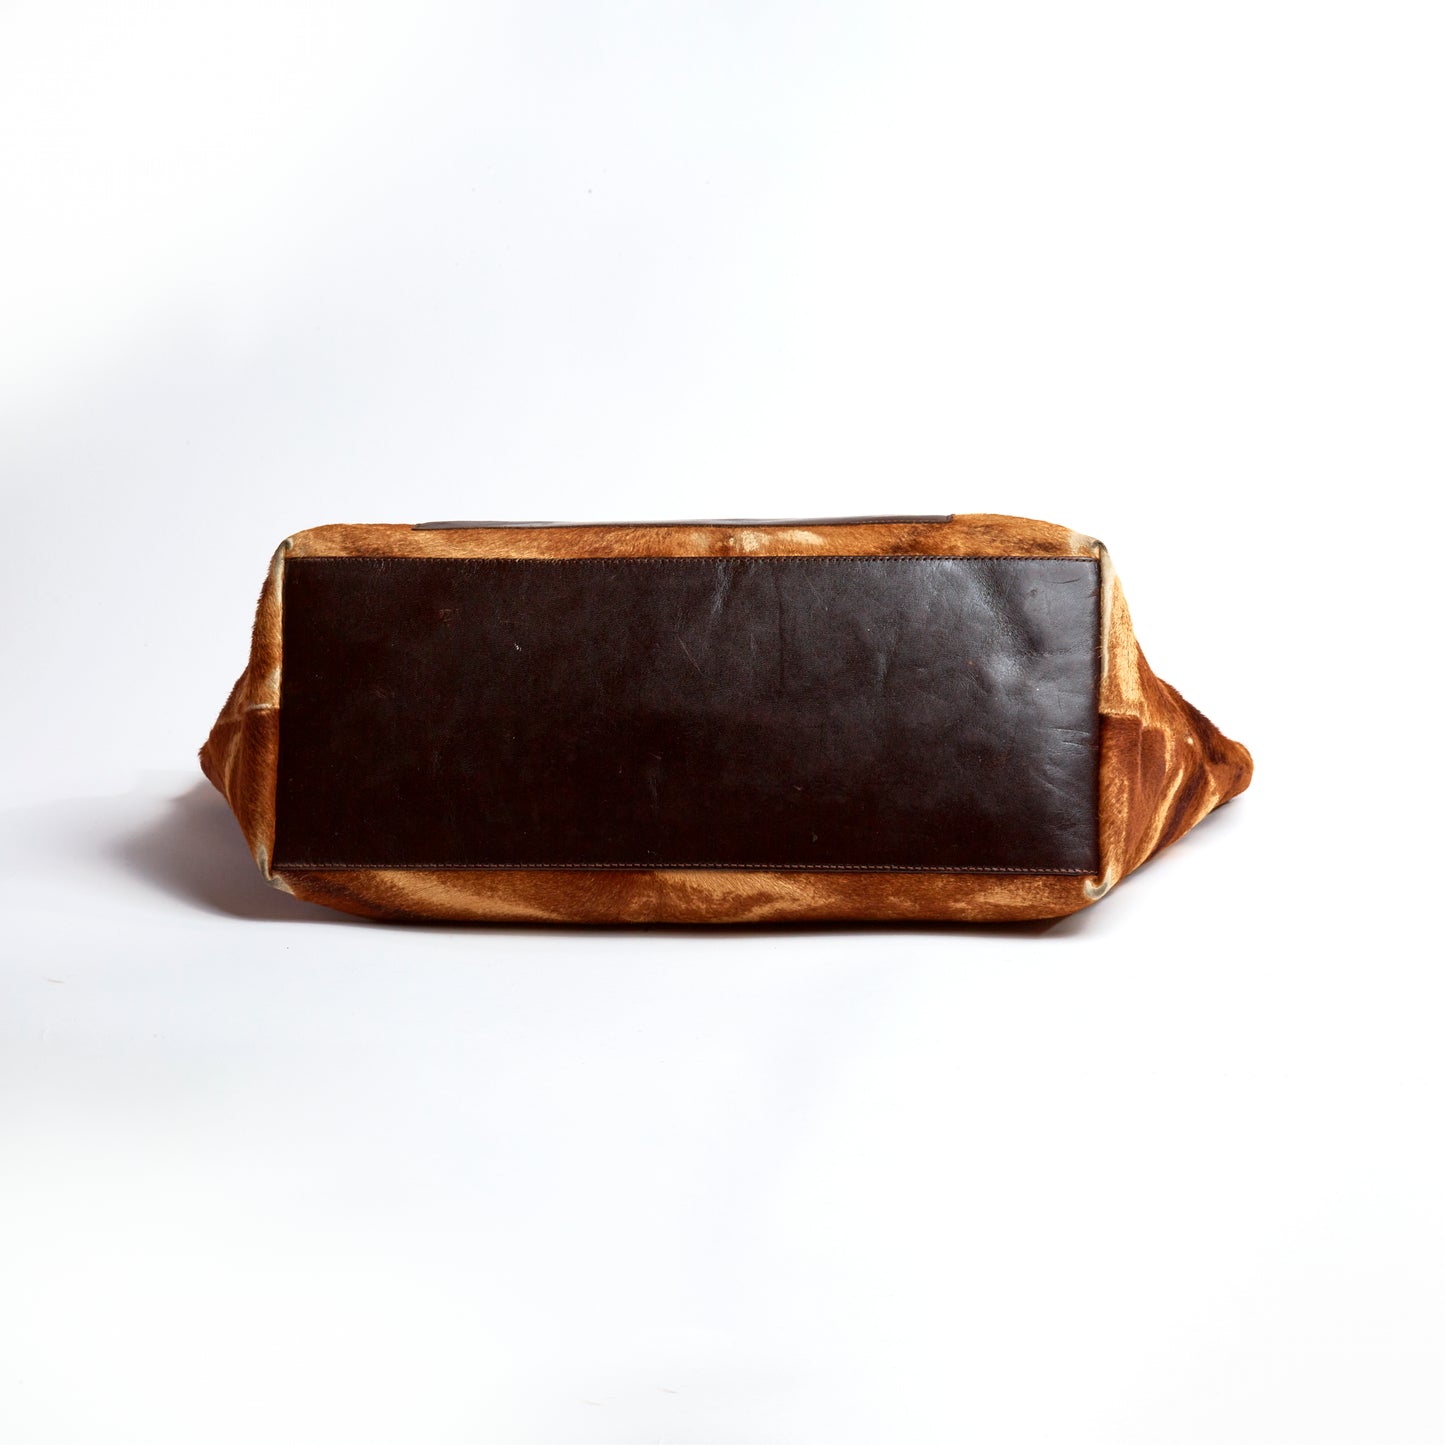 Vintage Fendi Brown Calfskin Tote Bag